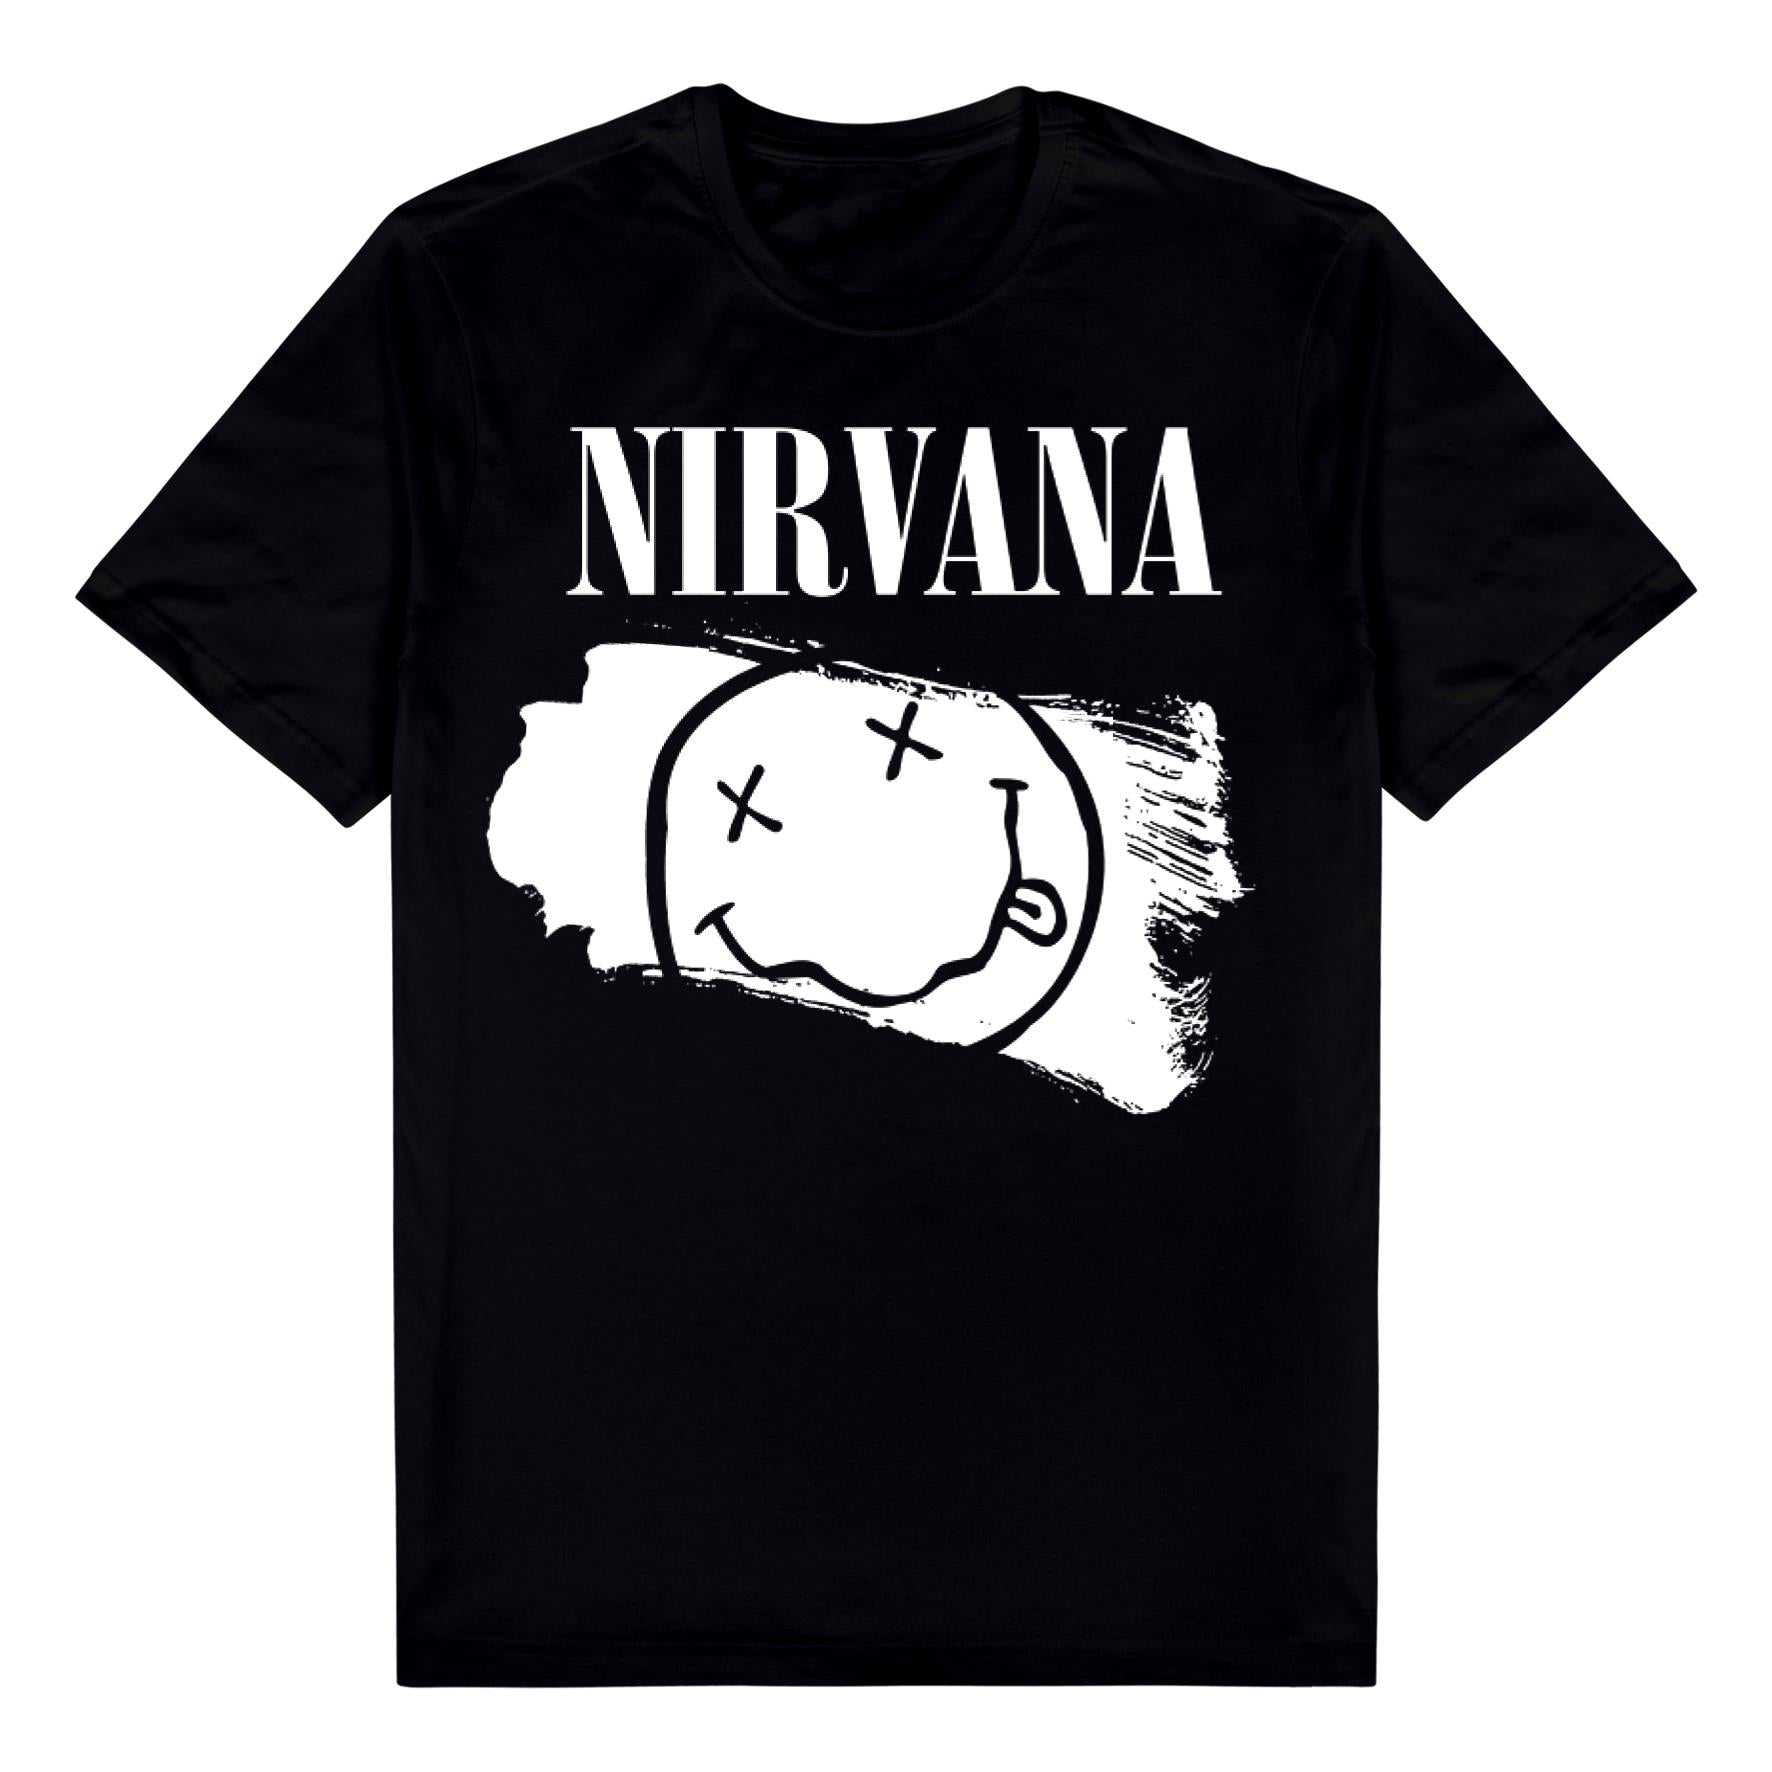 nirvana t-shirt